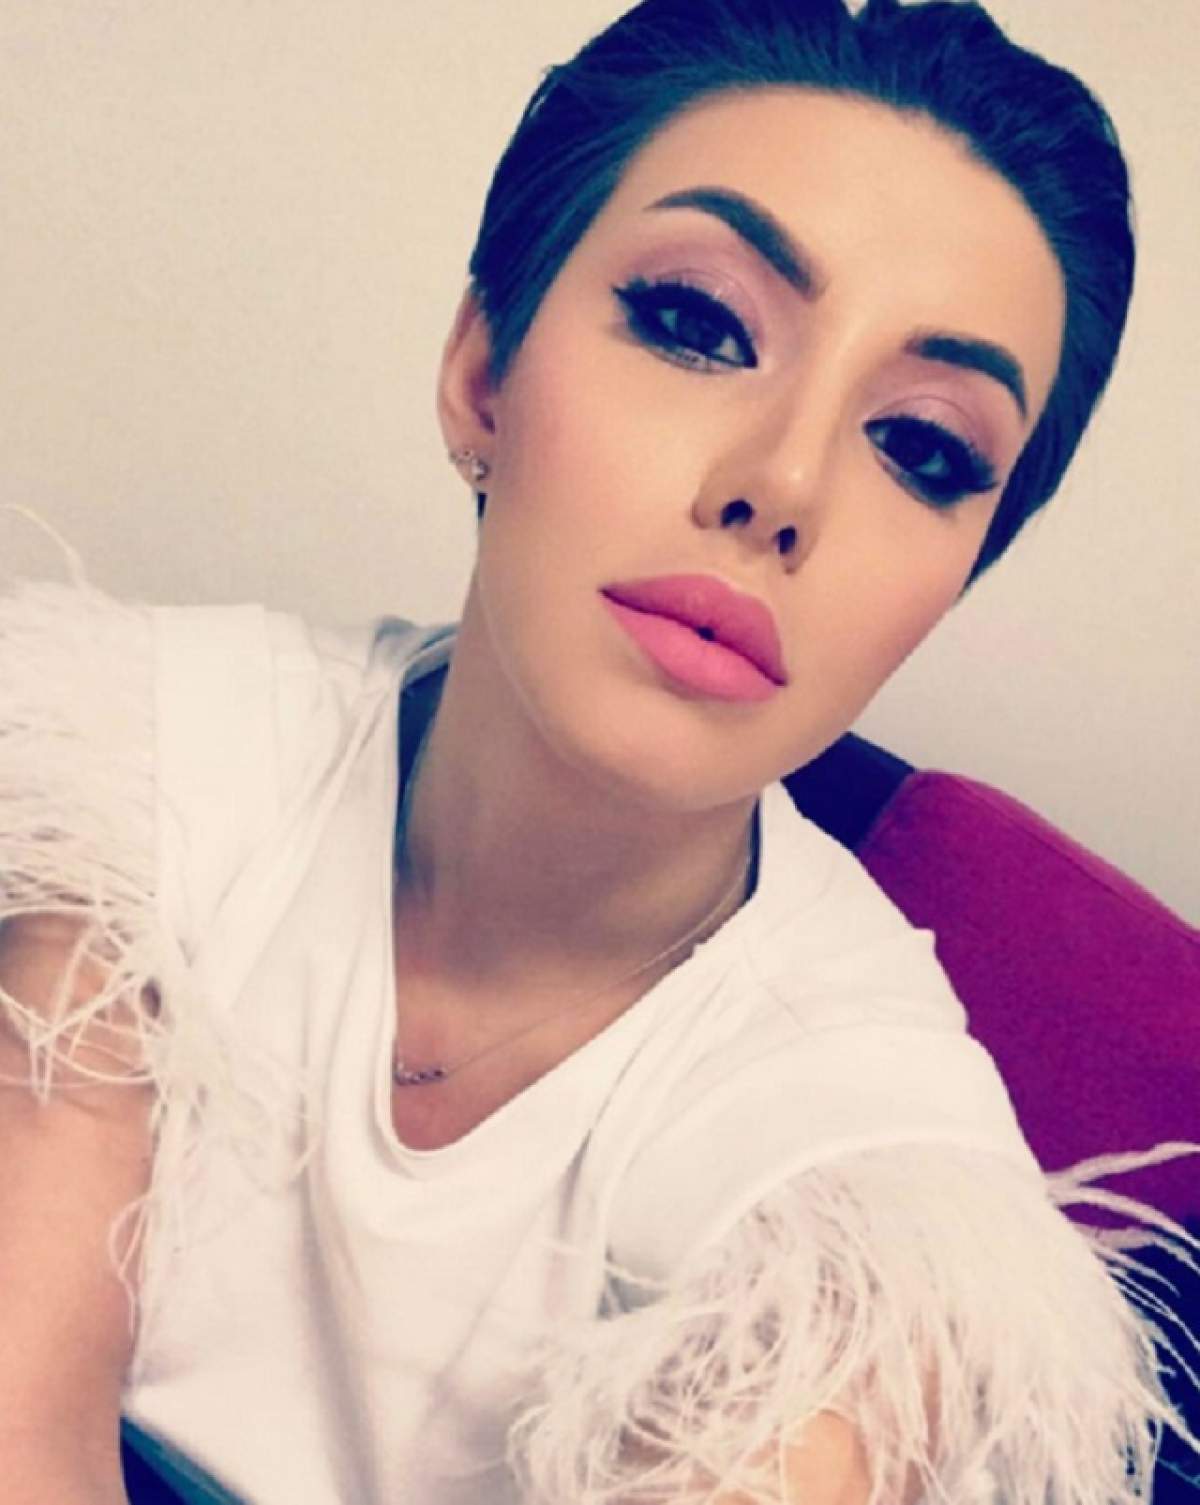 VIDEO / Nicoleta Nucă s-a operat la nas şi la sâni deodată: "M-am urcat de masa de operaţie şi mi le-au făcut pe amândouă în acelaşi timp"